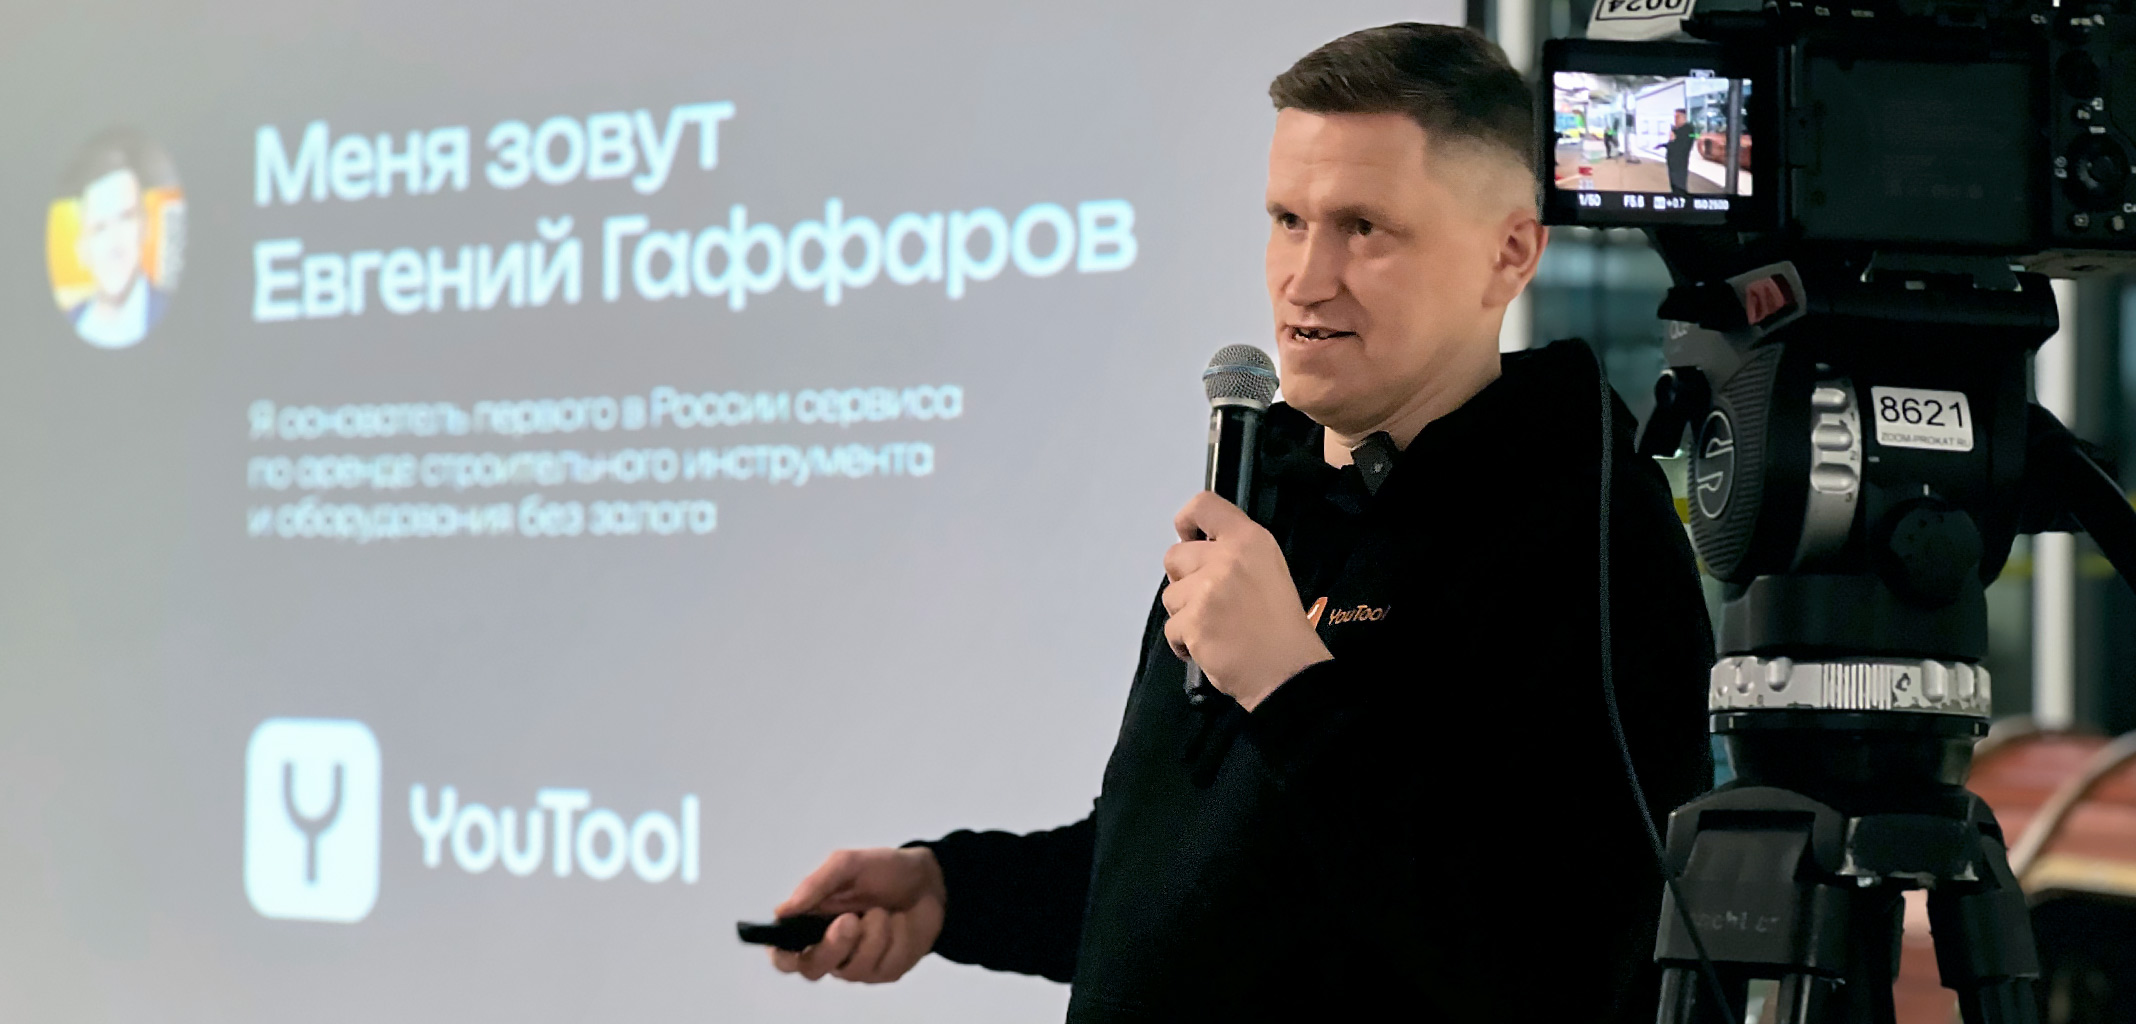 «Перфоратор сдается по цене суточной аренды квартиры»: Евгений Гаффаров — о шеринге инструментов YouTool